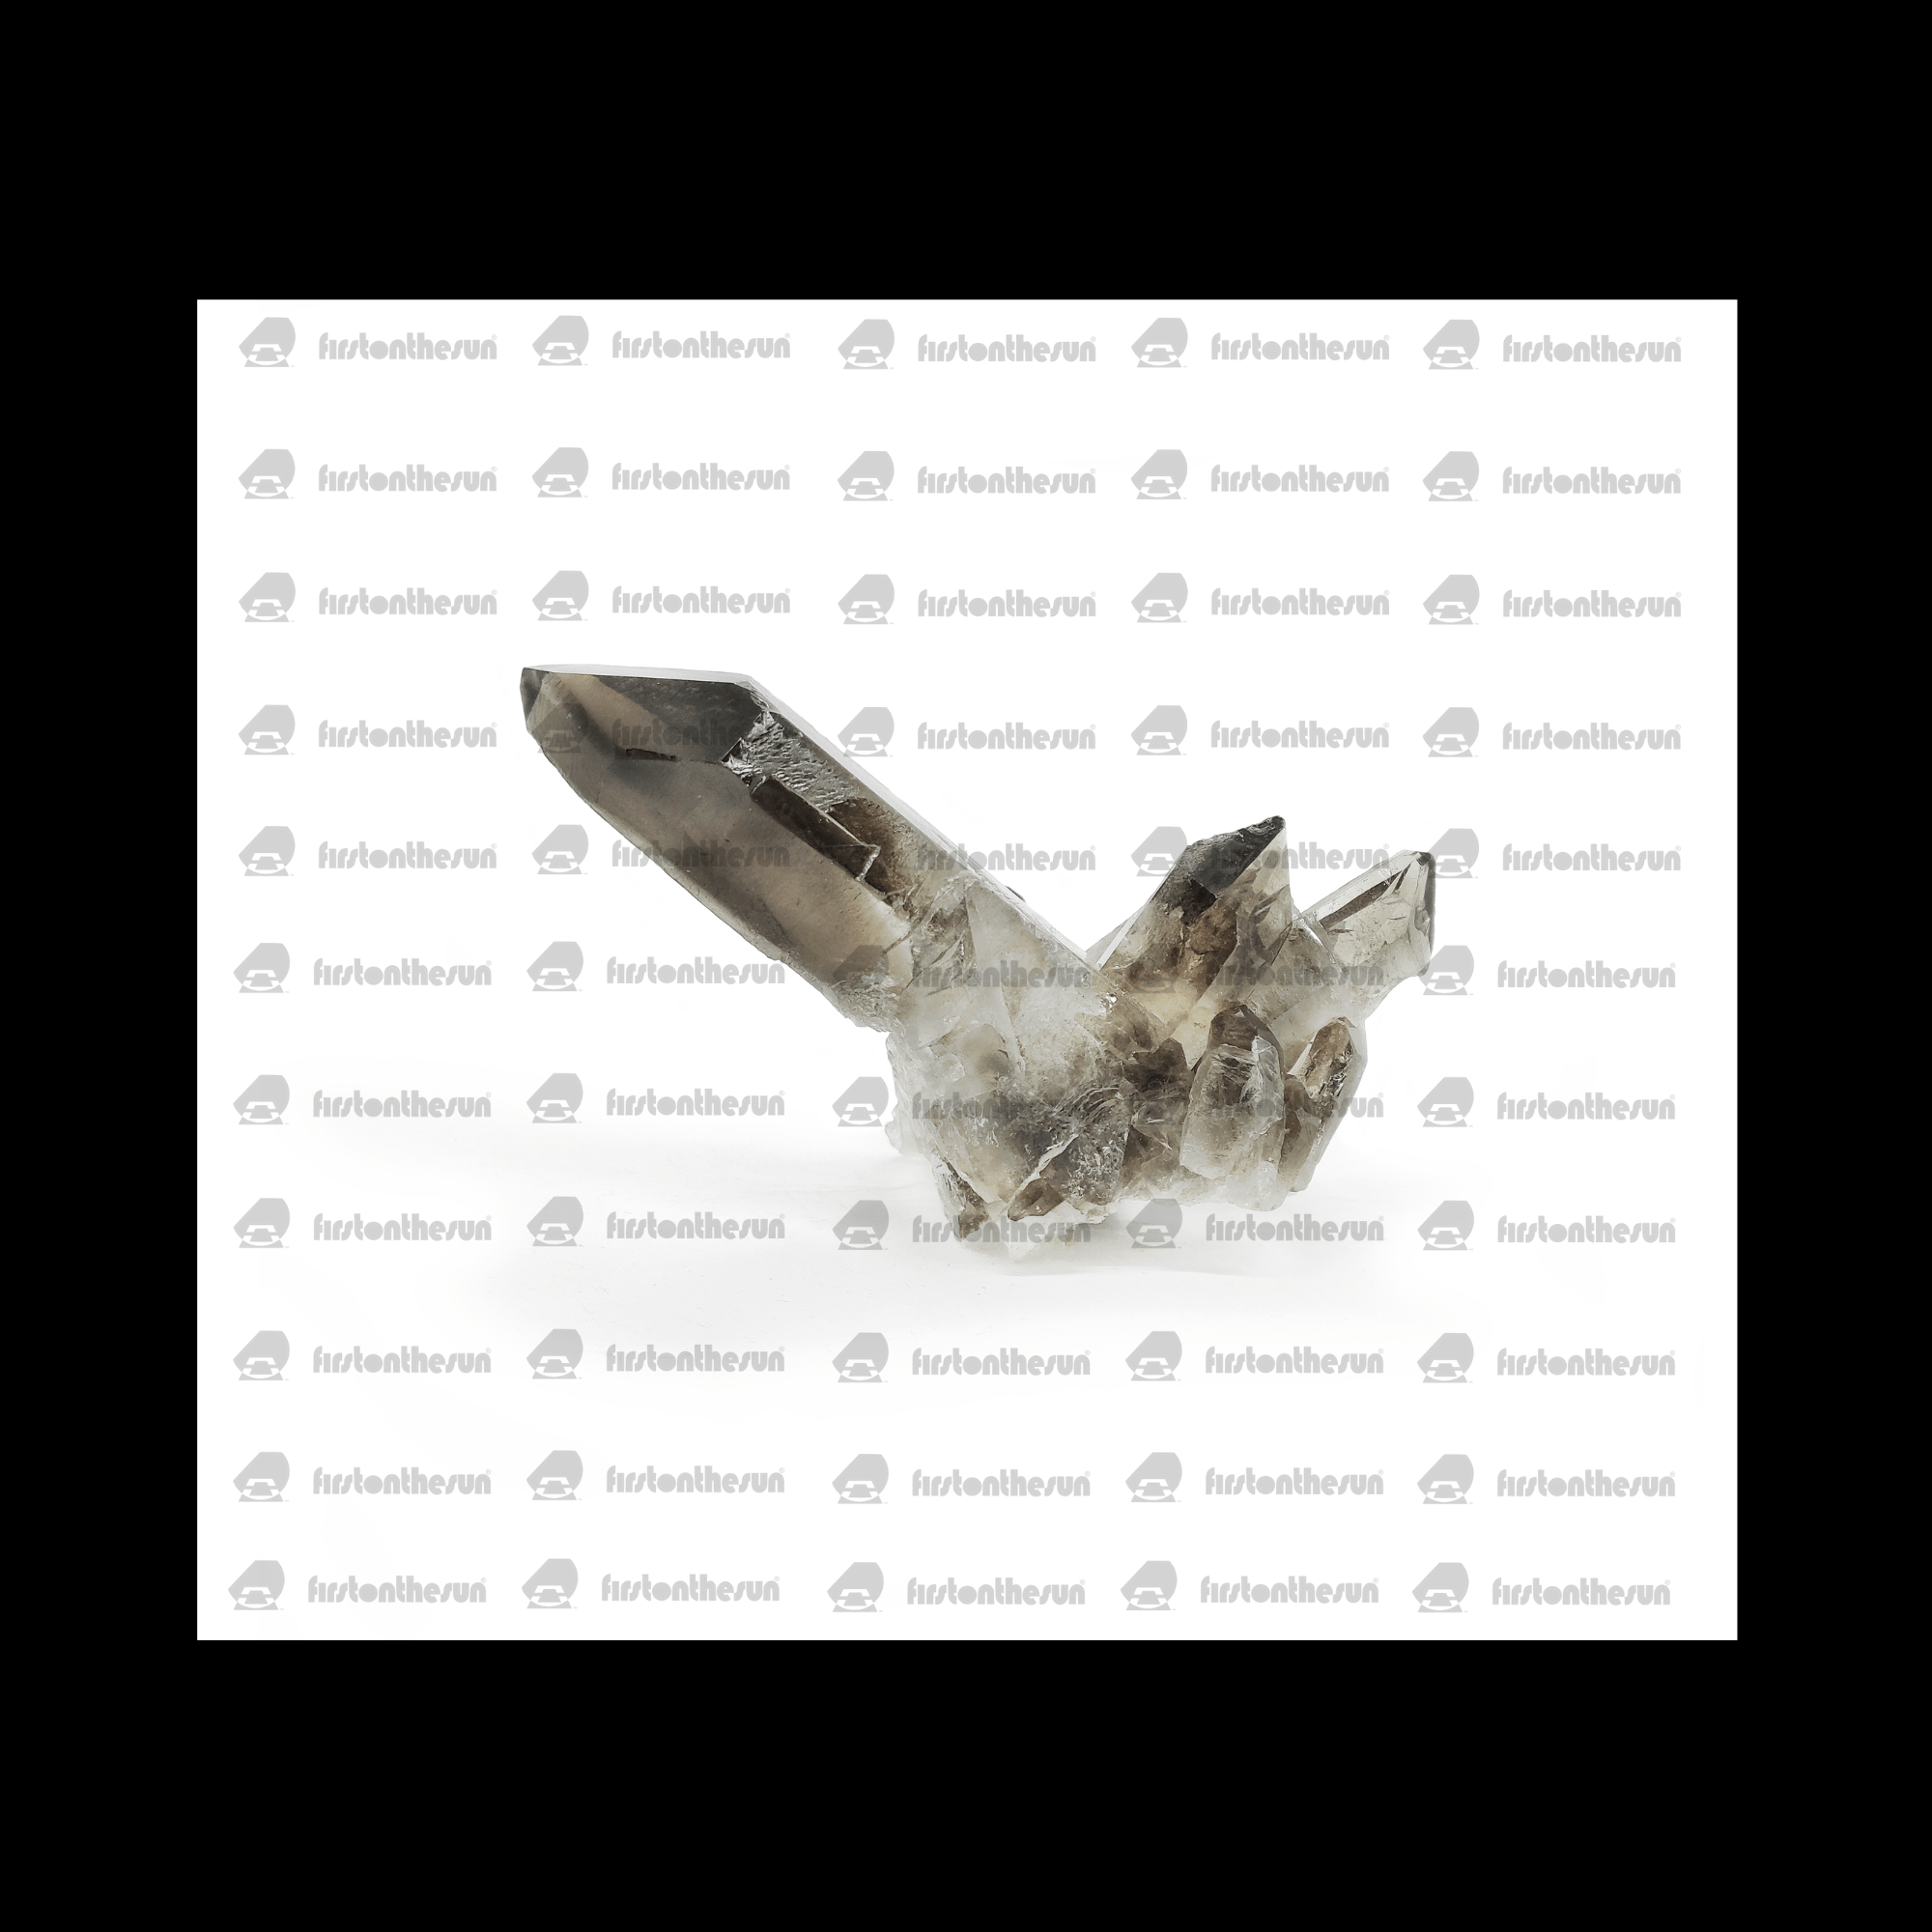 Stockfoto eines Rauchquarz Edelsteins, welcher mehrere ausgeprägte Kristalle zeigt. Diese hochauflösende Fotografie des Minerals ist mit einem Wasserzeichen geschützt.